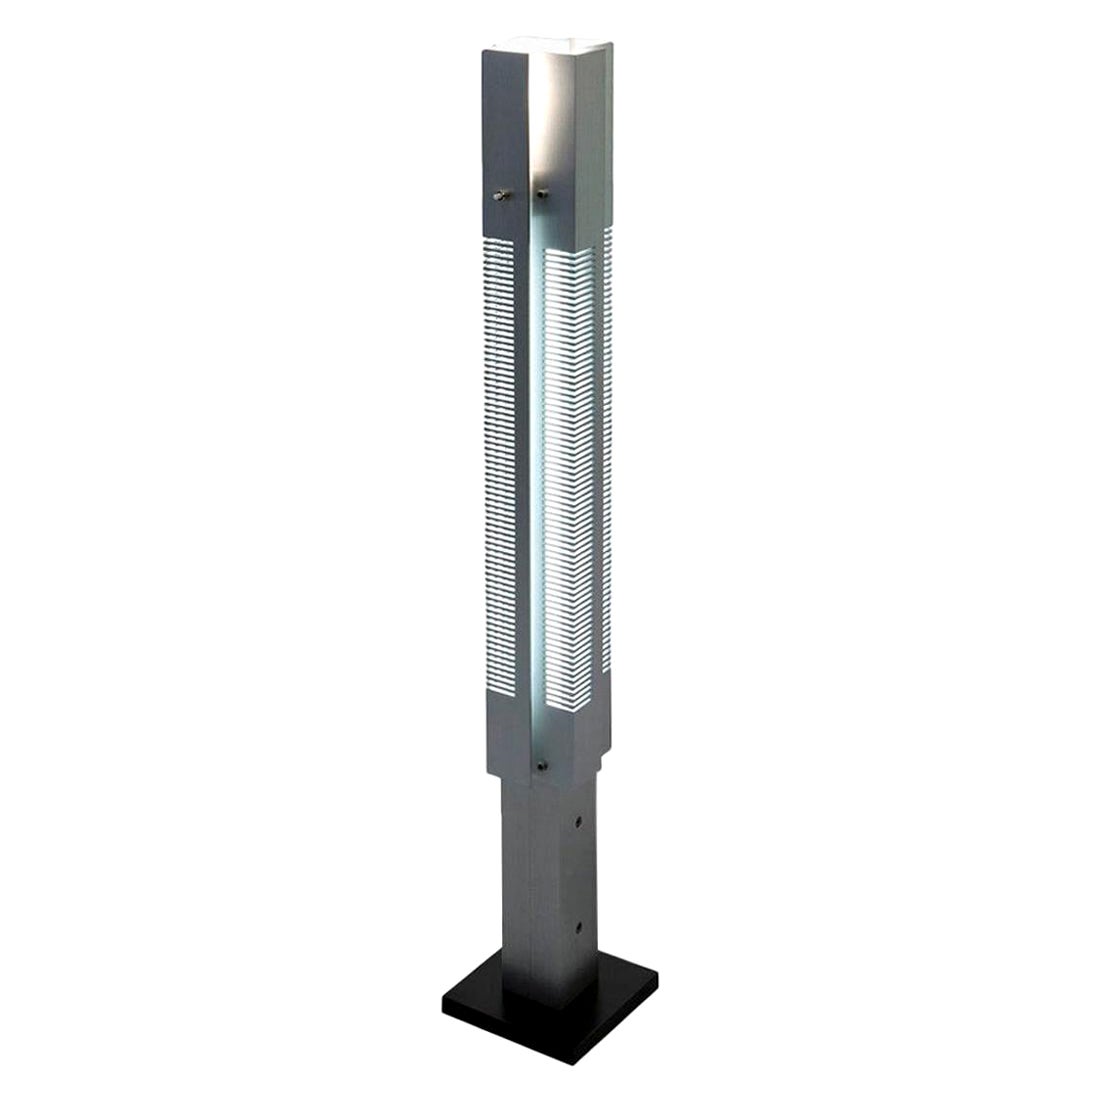 Serge Mouille Mid-Century Modern Aluminium Small Signal Column Floor Lamp